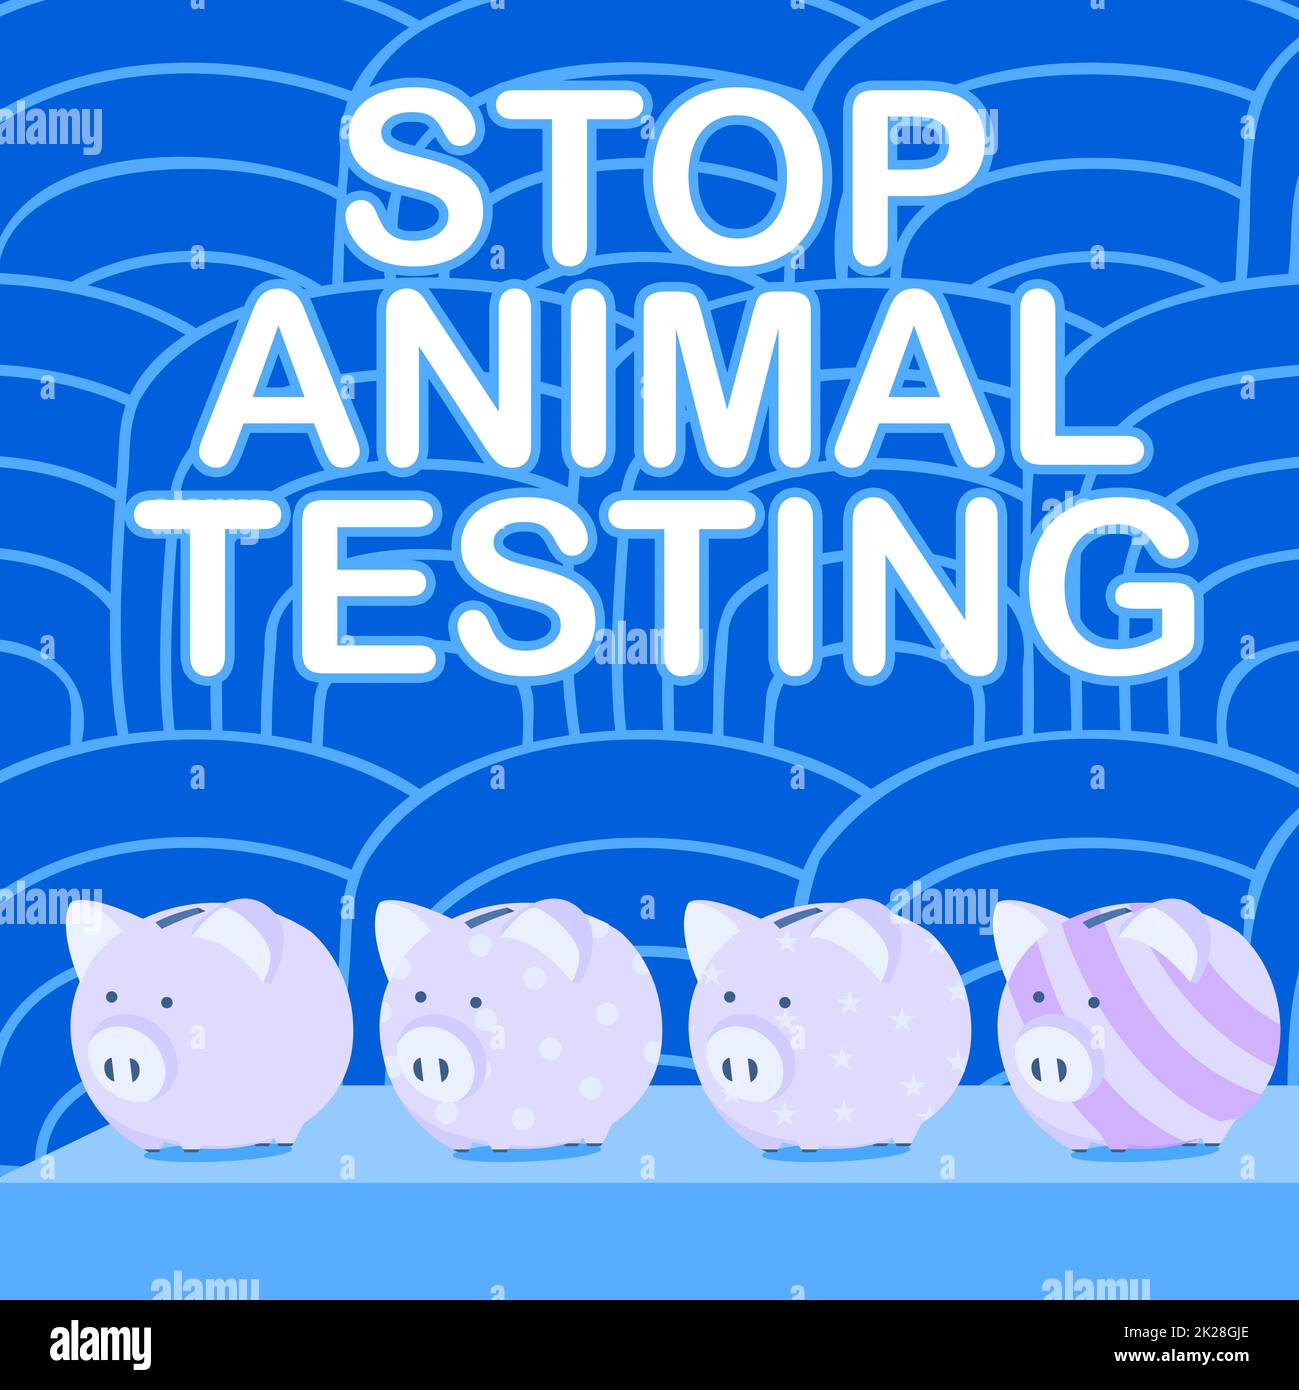 Handgeschriebenes Schild Stop Animal Testing. Konzept bedeutet wissenschaftliches Experiment, bei dem lebende Tiere gezwungen werden, mehrere Piggy Bank-Zeichnungen auf einem Tisch mit gestreiftem Hintergrund zu durchlaufen. Stockfoto